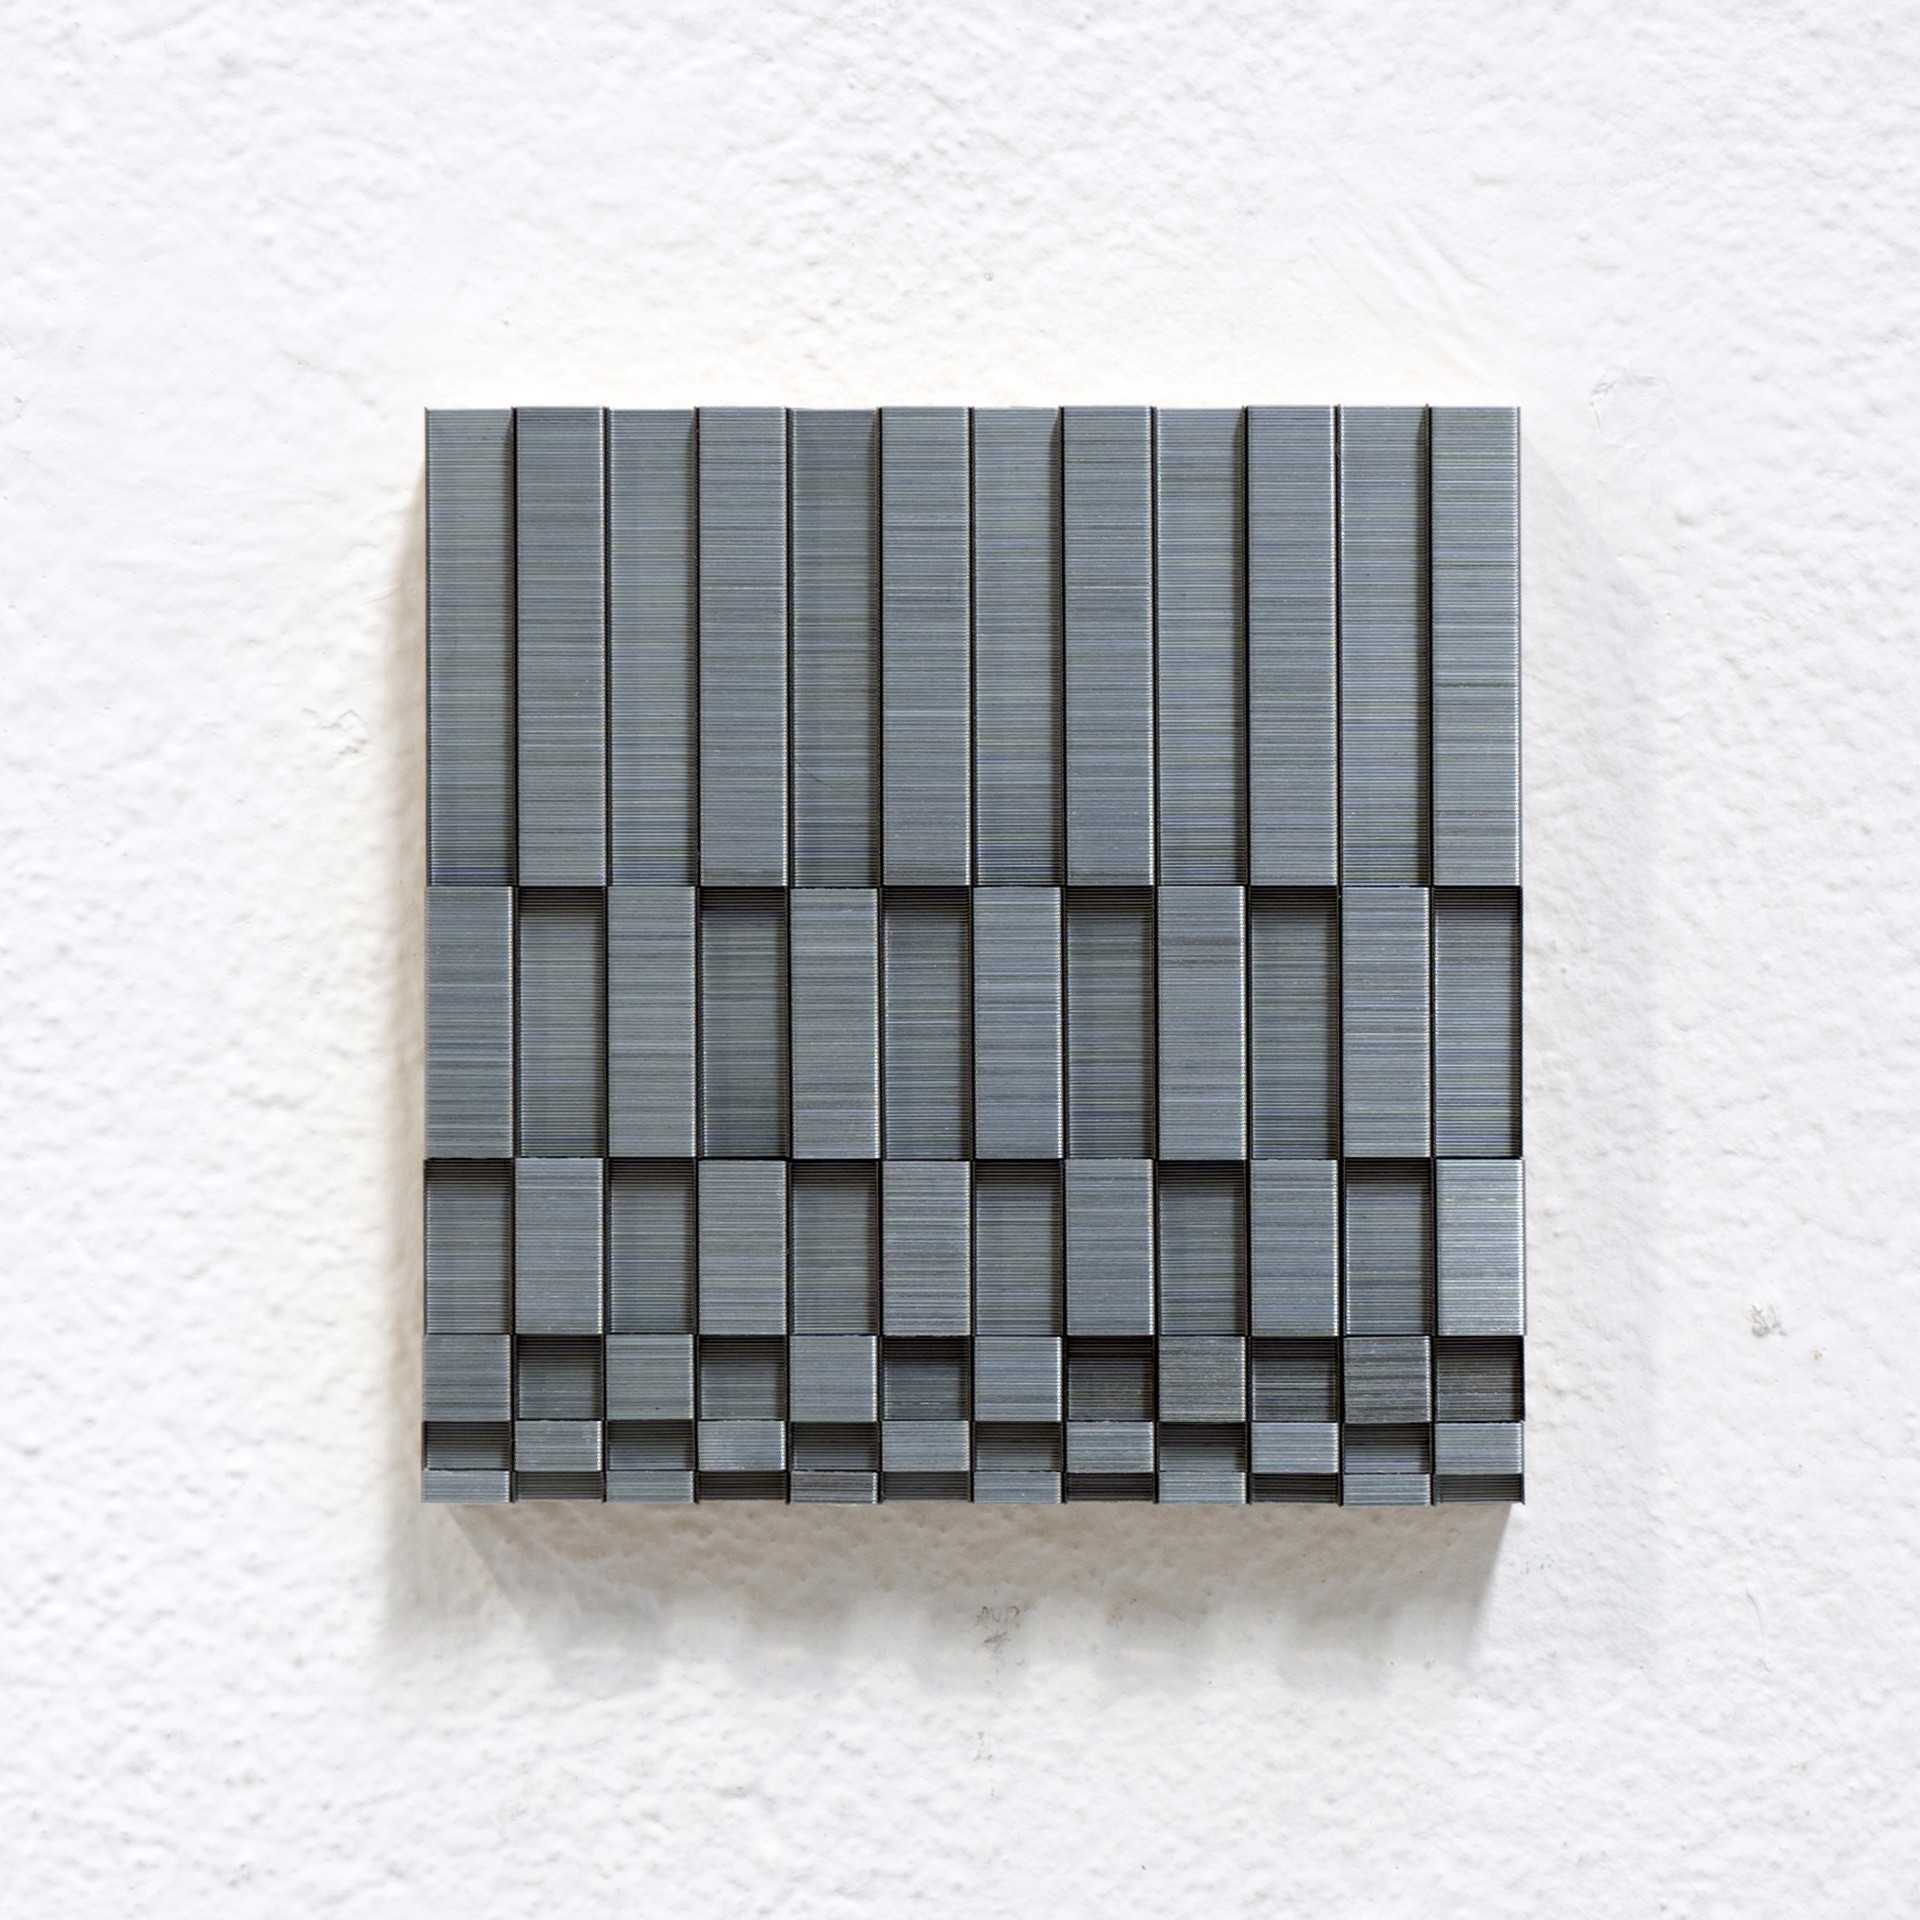 Checkerboard Variation No. 1 by Evan Stoler